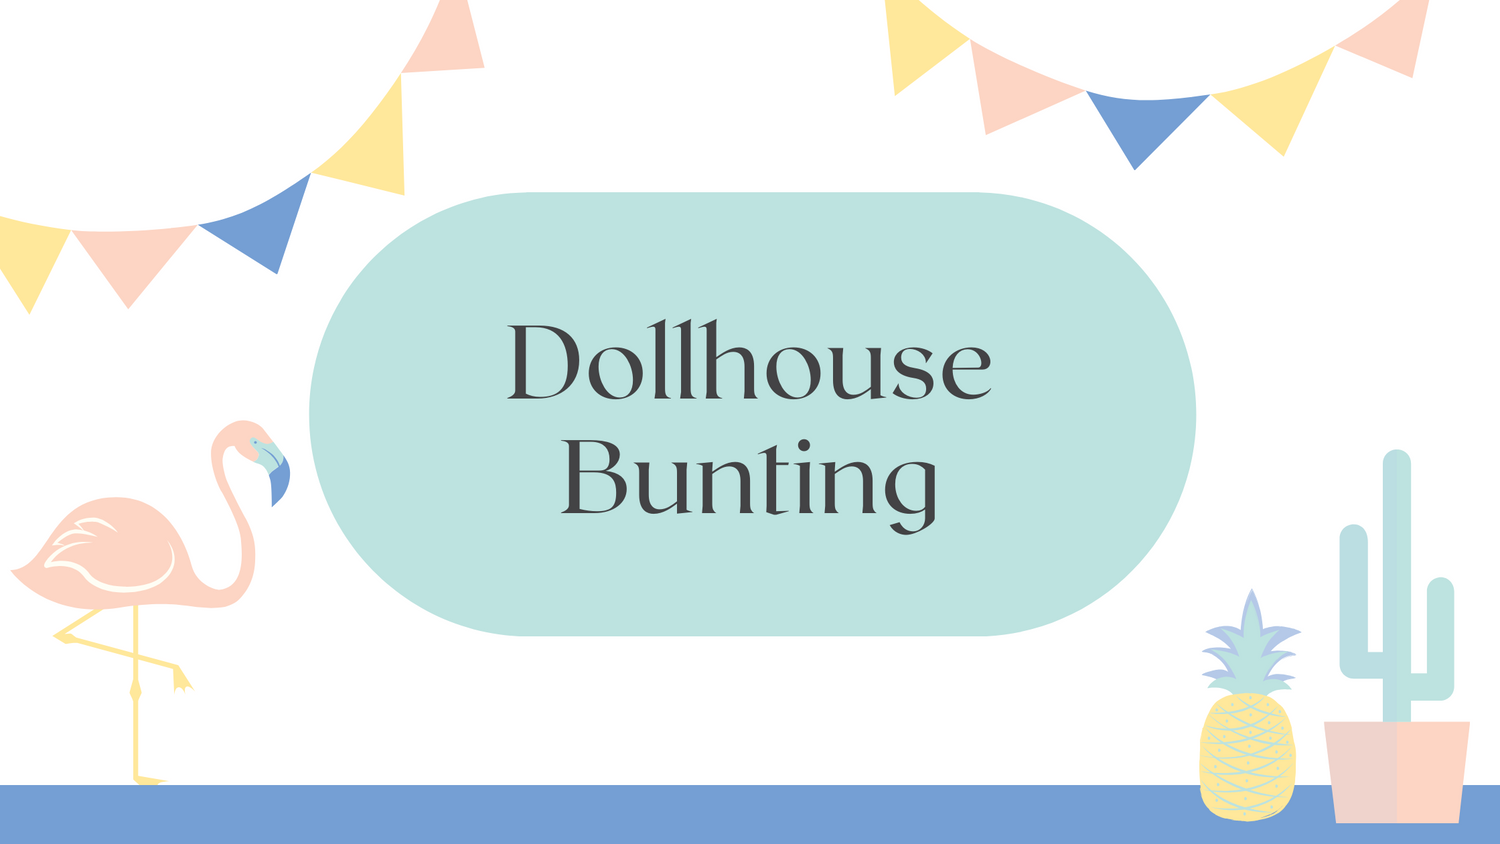 Dollhouse Bunting